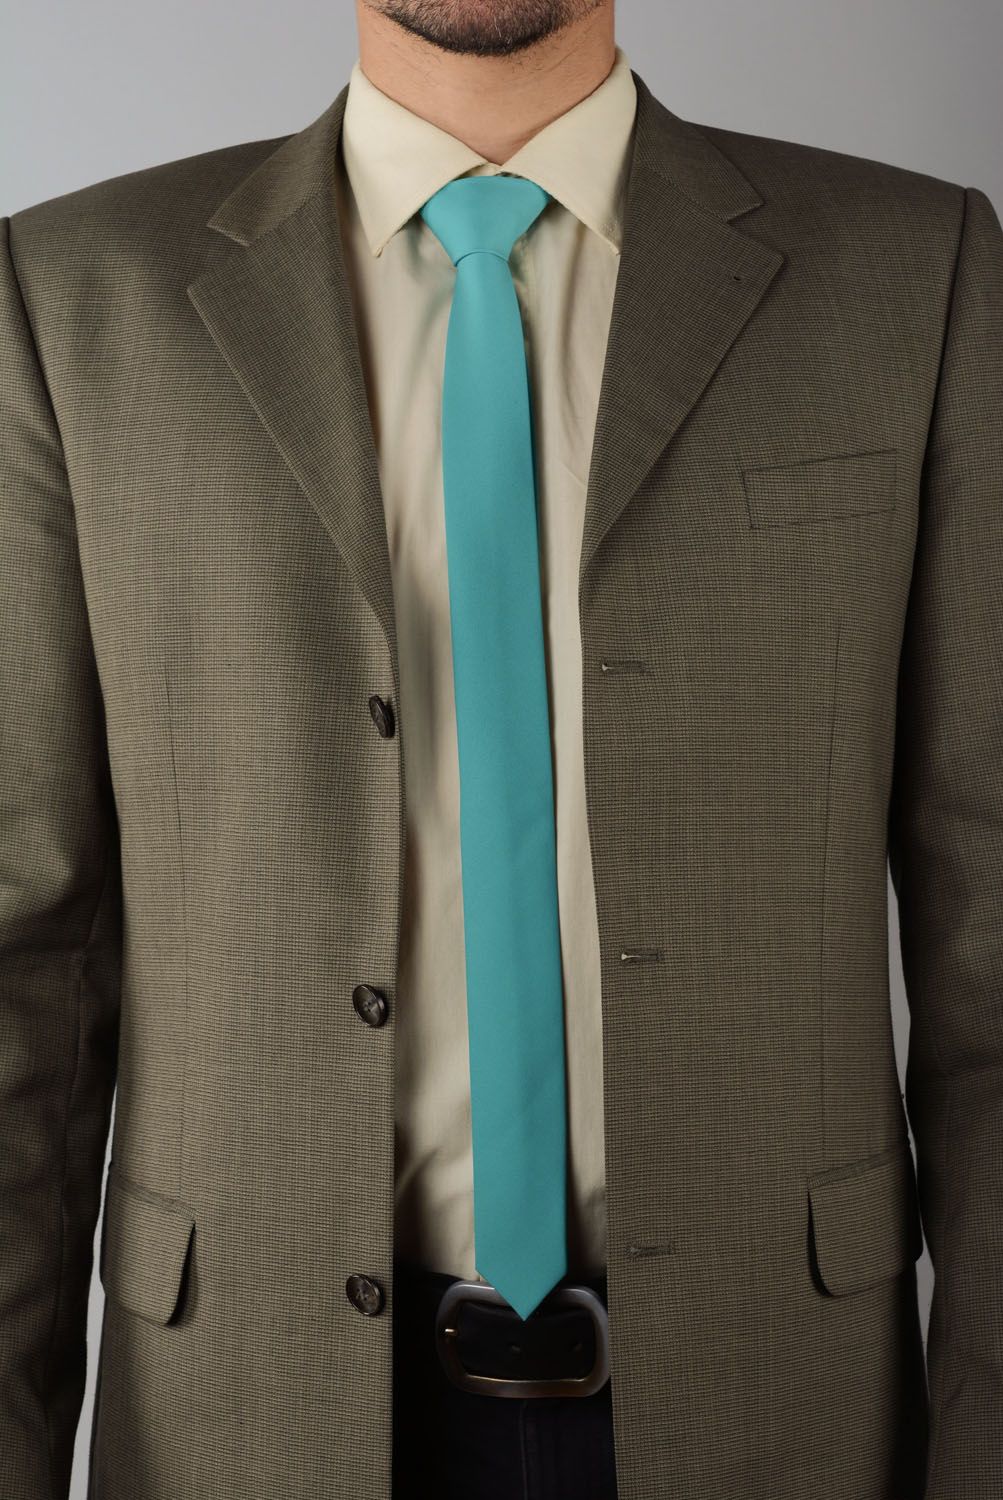 Cravate fine turquoise faite main  photo 1